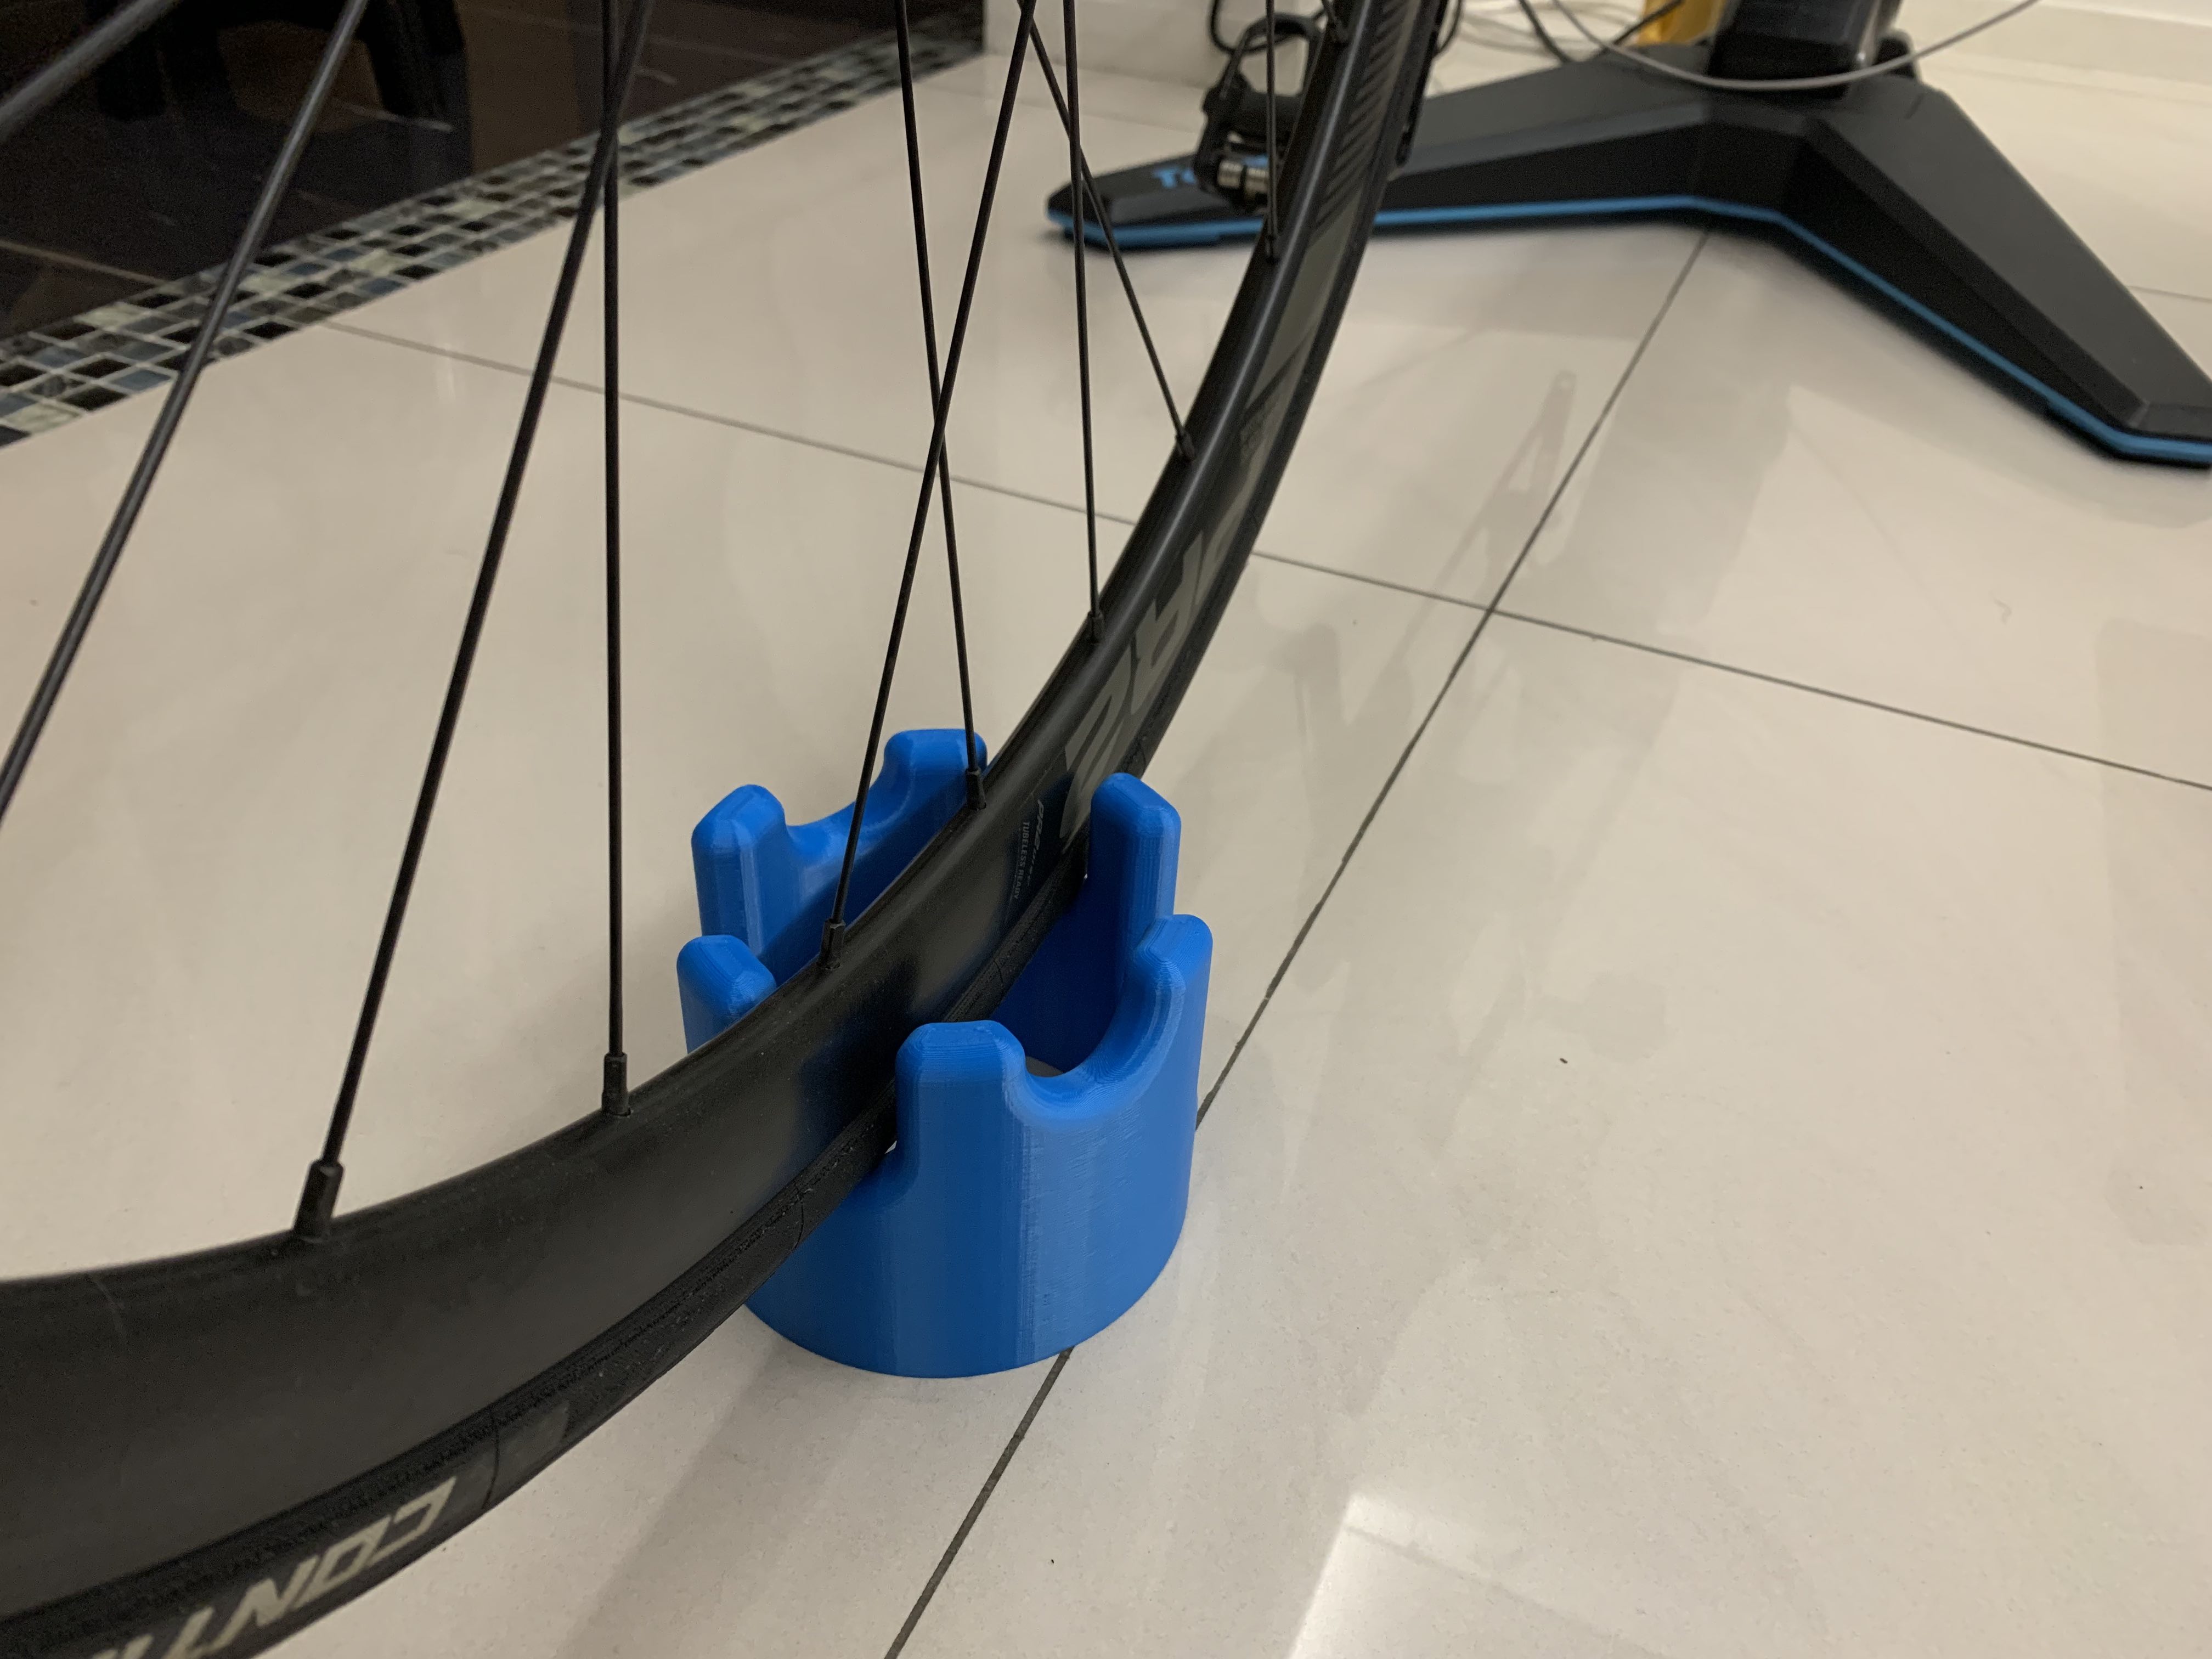 Front wheel support for indoor bike trainer